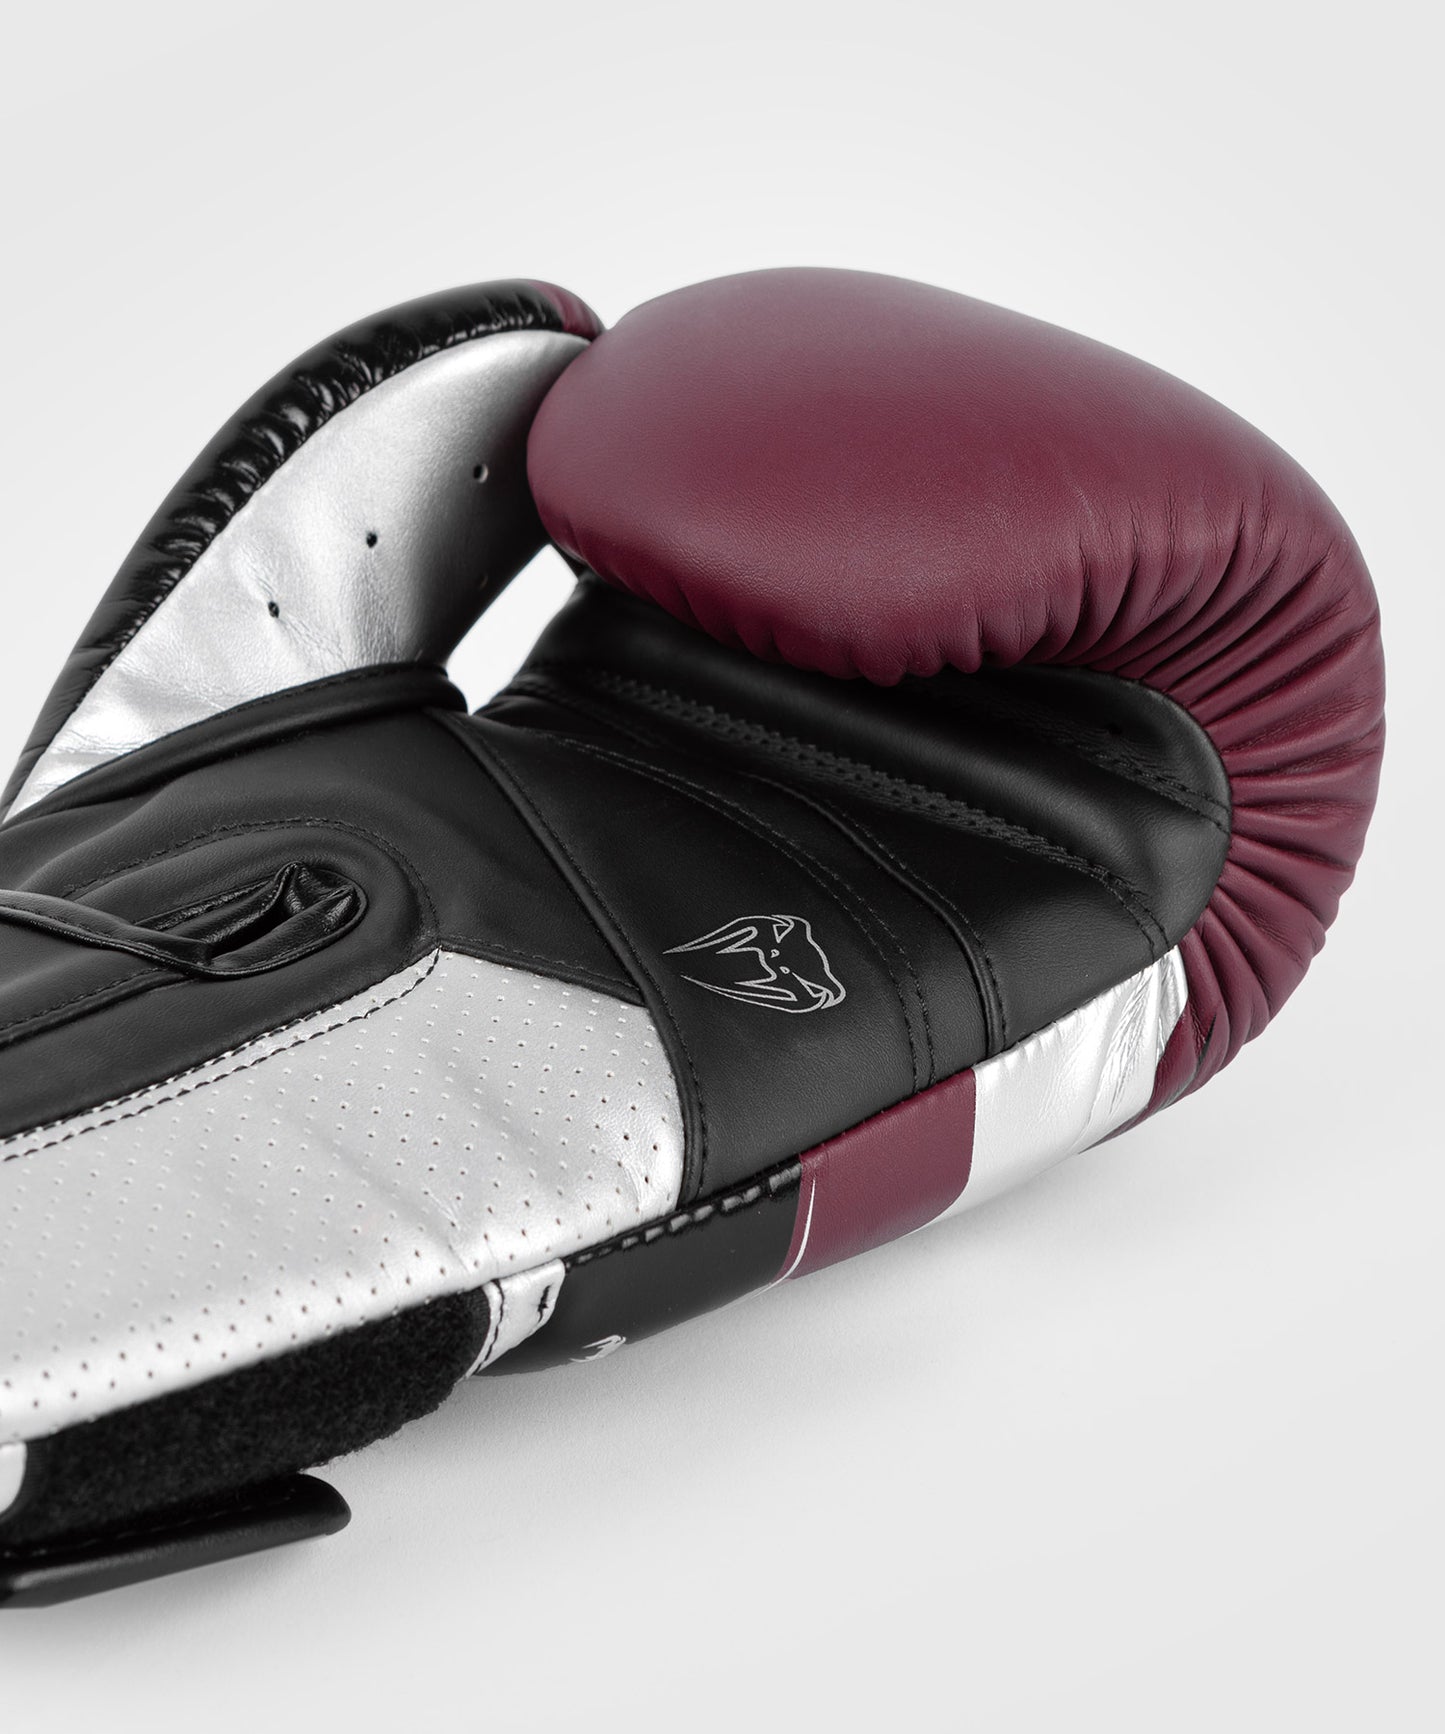 Venum Elite Evo Боксерские перчатки - бордовый/серебристый